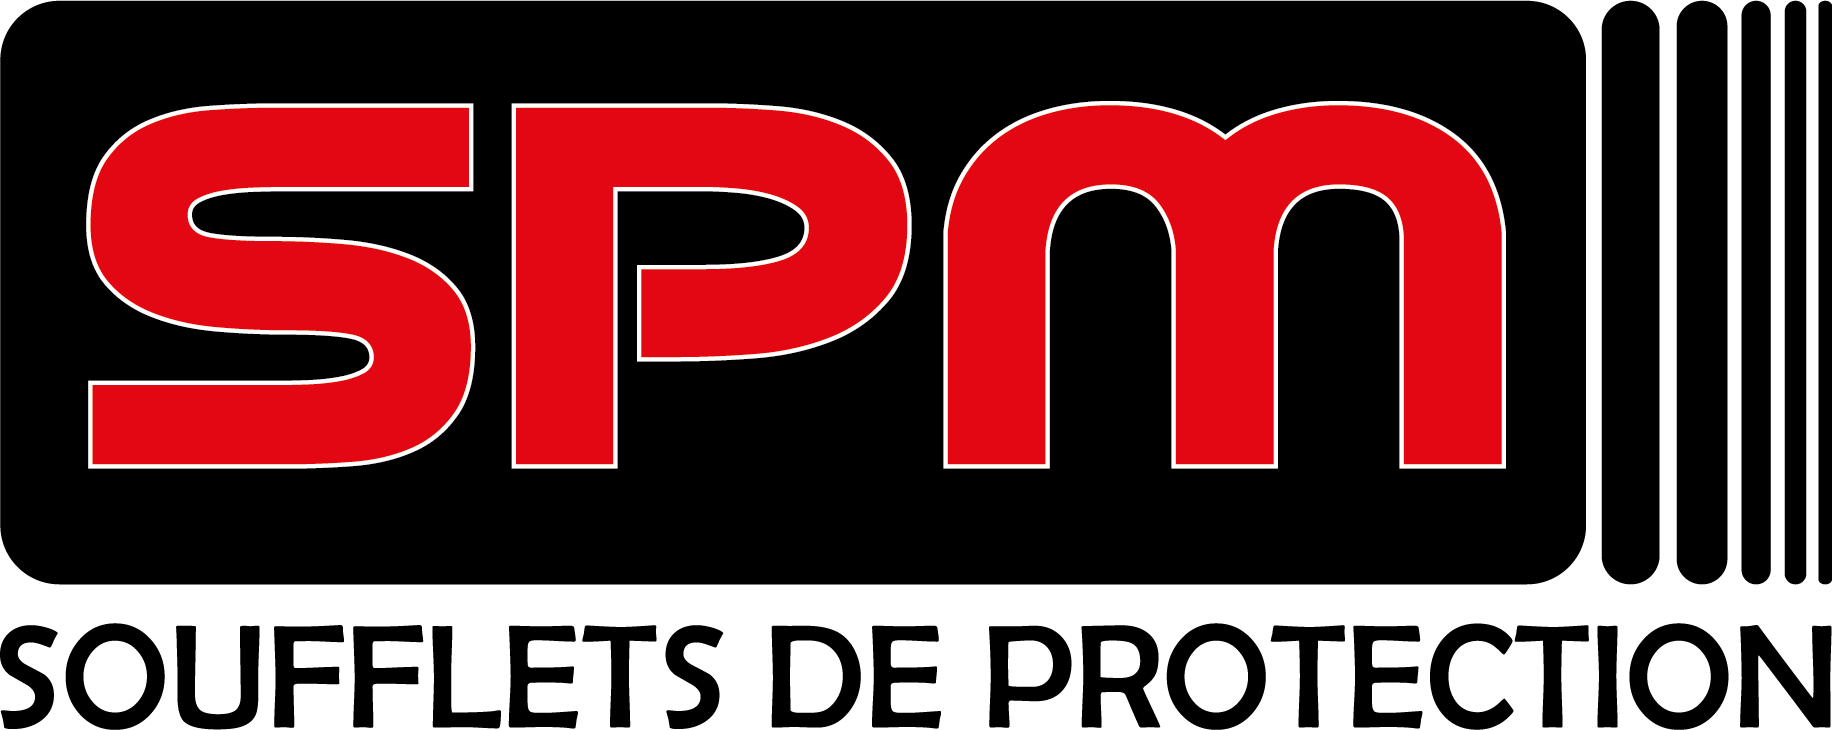 Soufflet de protection  SPM Saumur, concepteur et fabricant